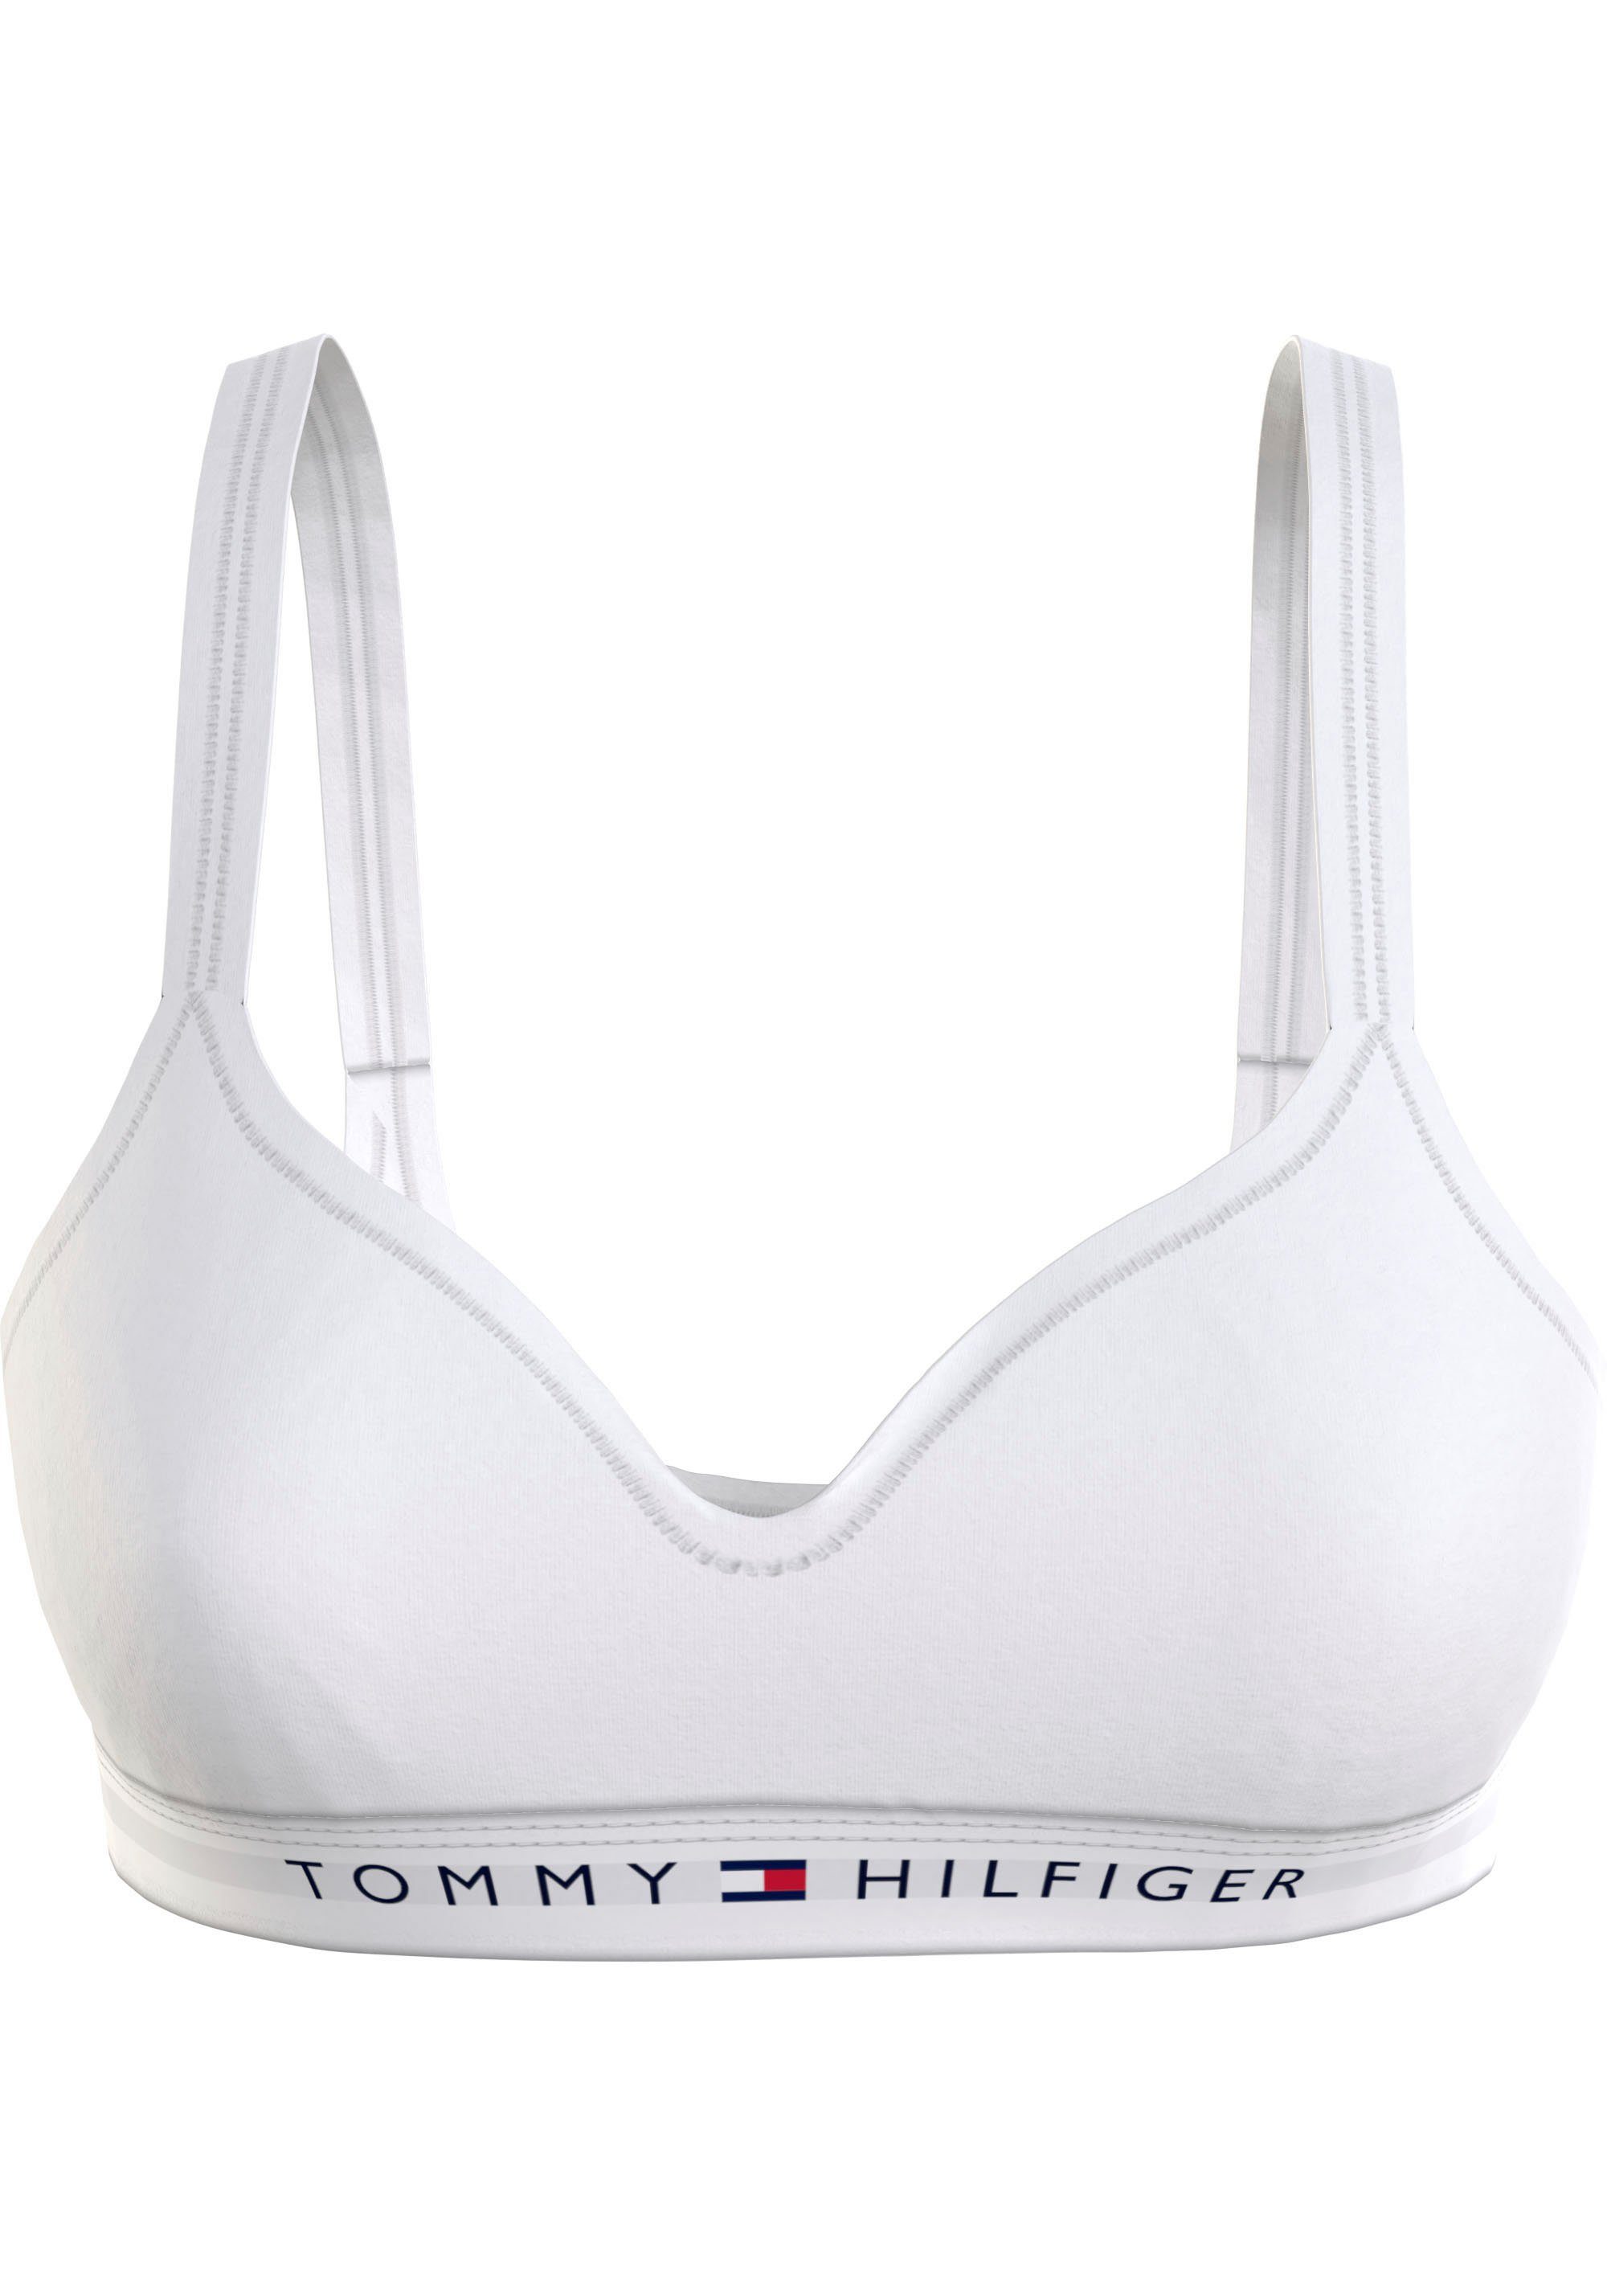 Tommy Hilfiger Underwear Bralette-BH BRALETTE LIFT mit Tommy Hilfiger Markenlabel White